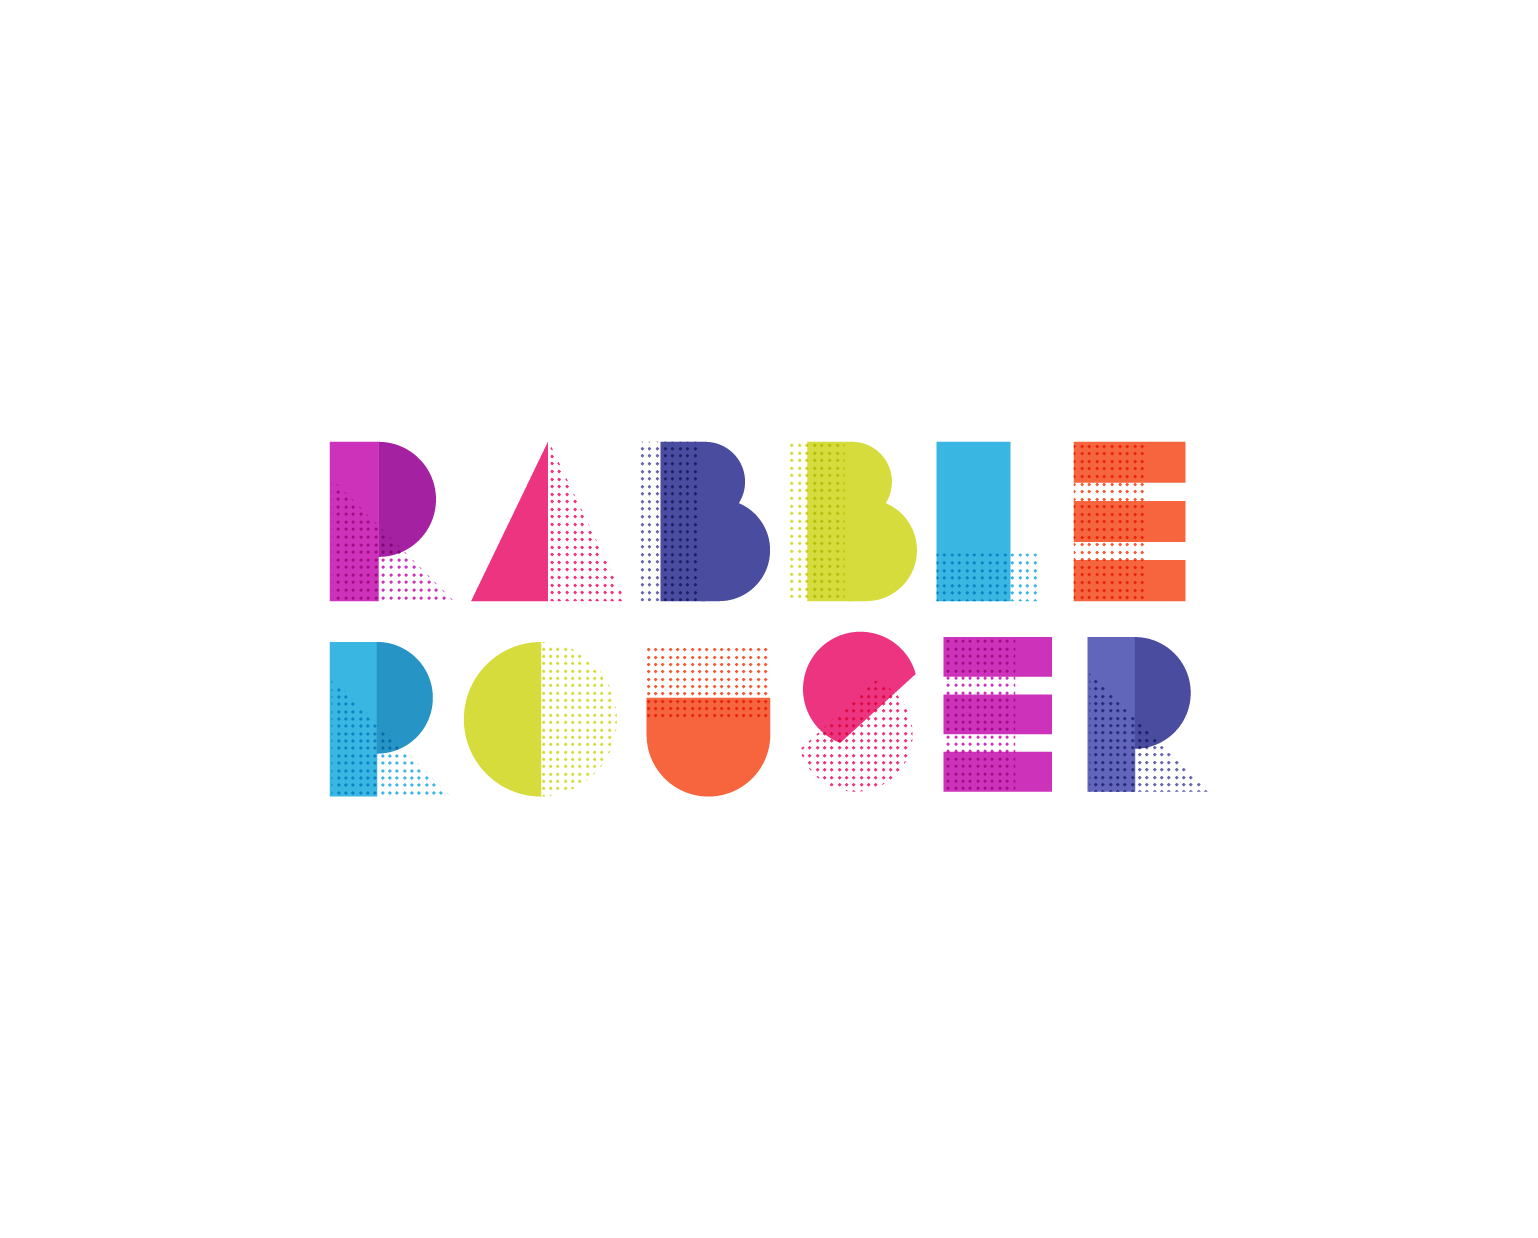 Rabble Rouser - Brand development and logo design